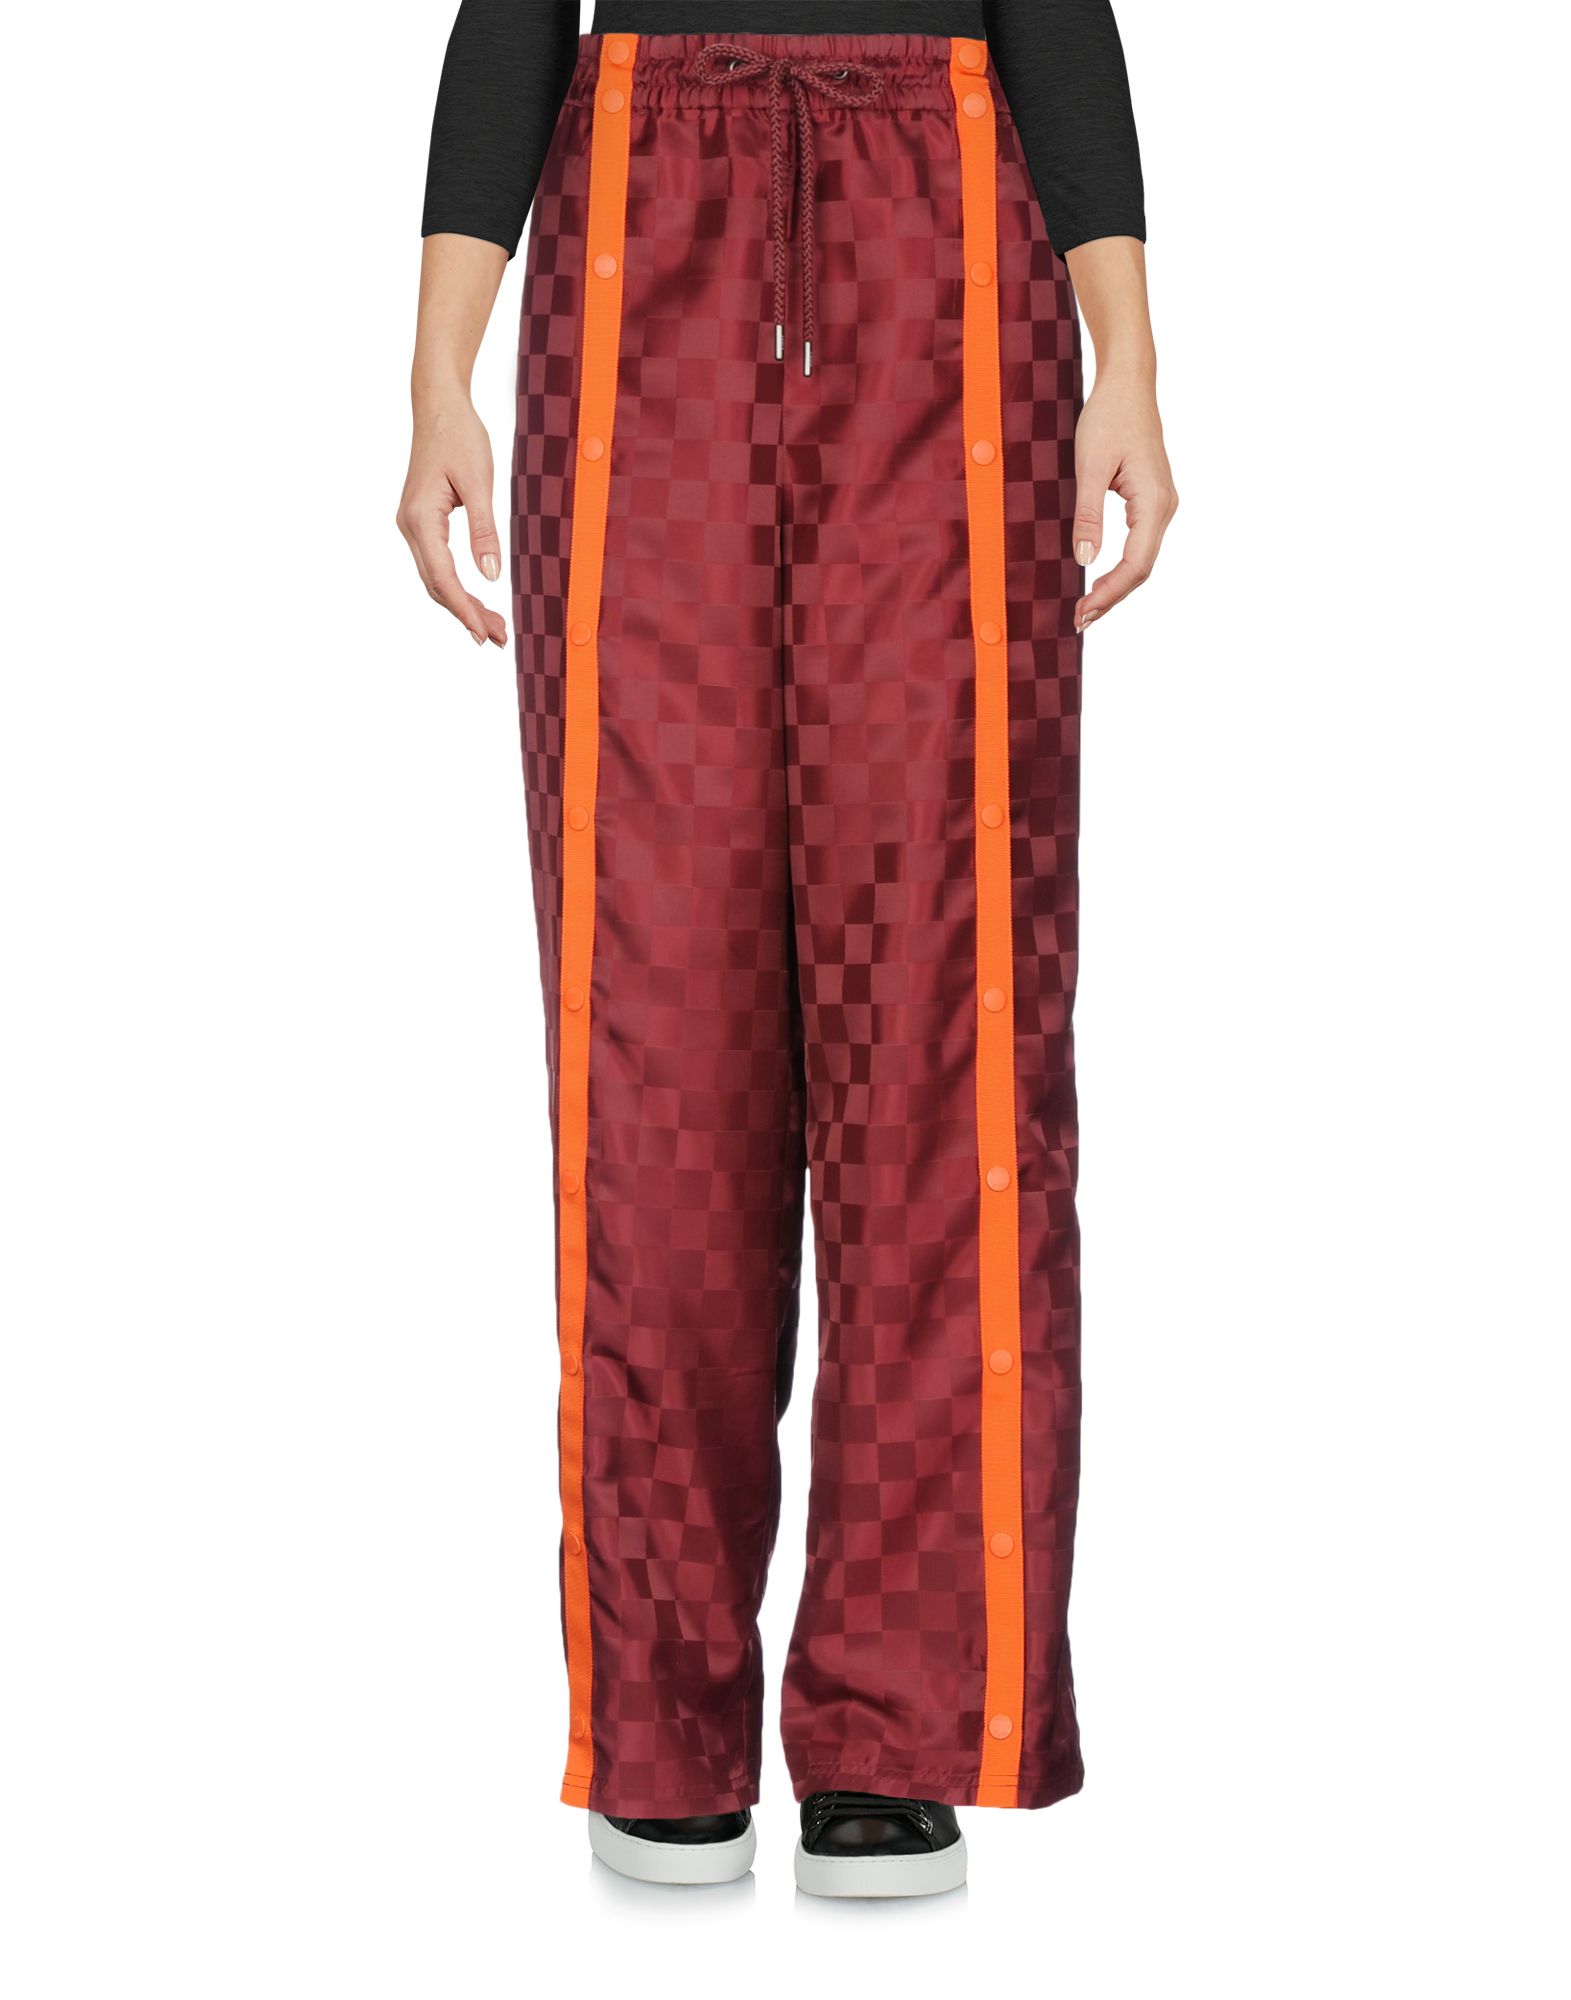 puma orange plaid pants